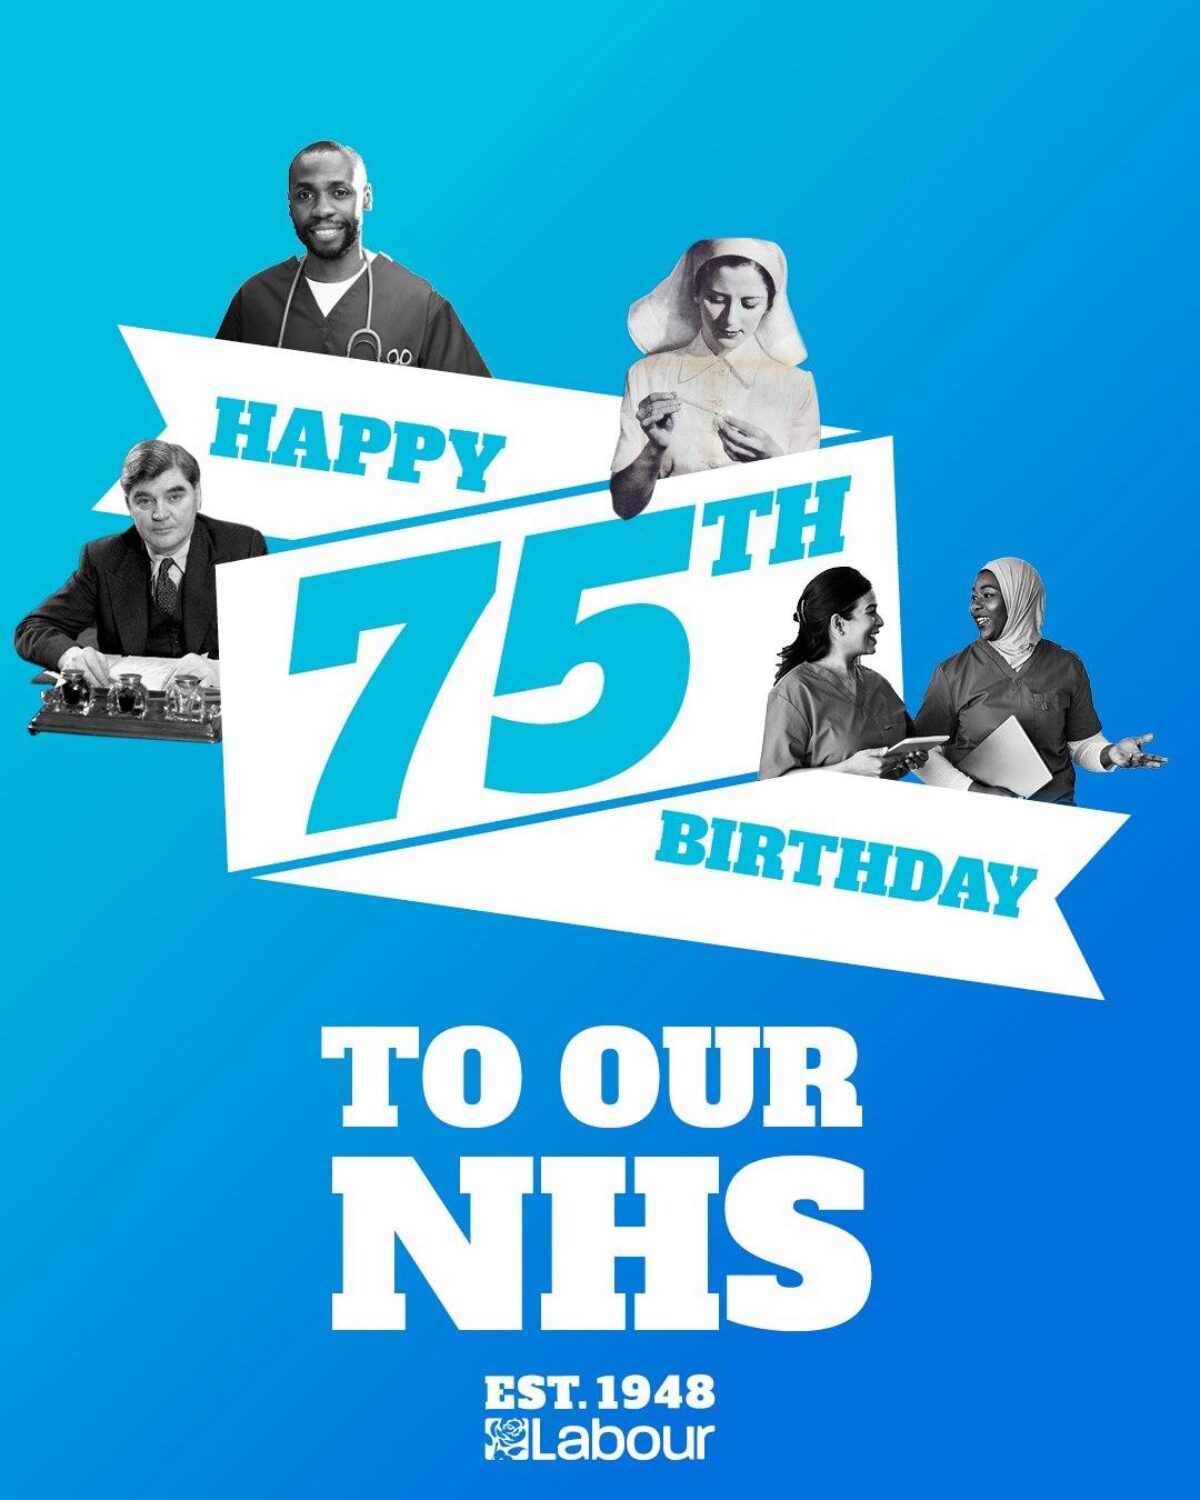 NHS 75 Years old!